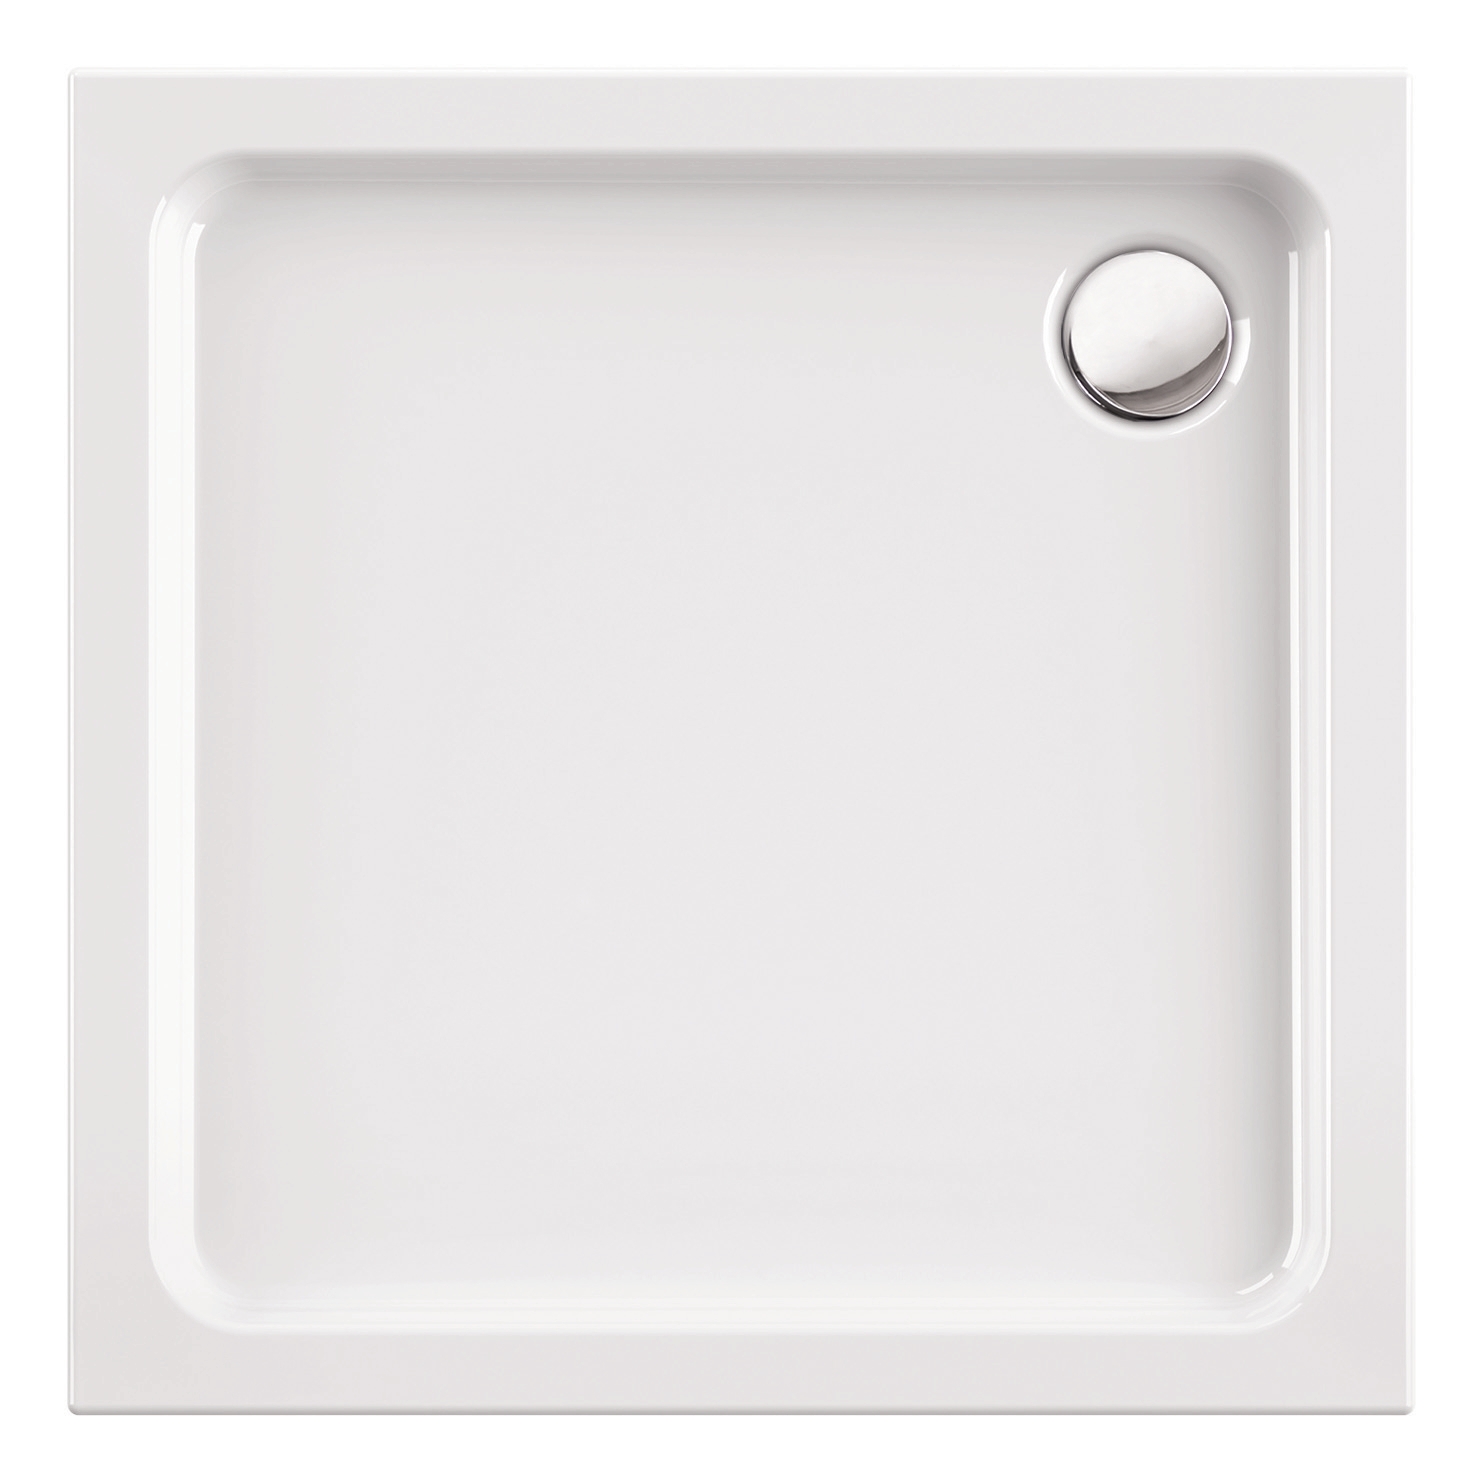 'aquaSu® Brausewanne soNo in Weiß, 90 x 90 x 6,5 cm